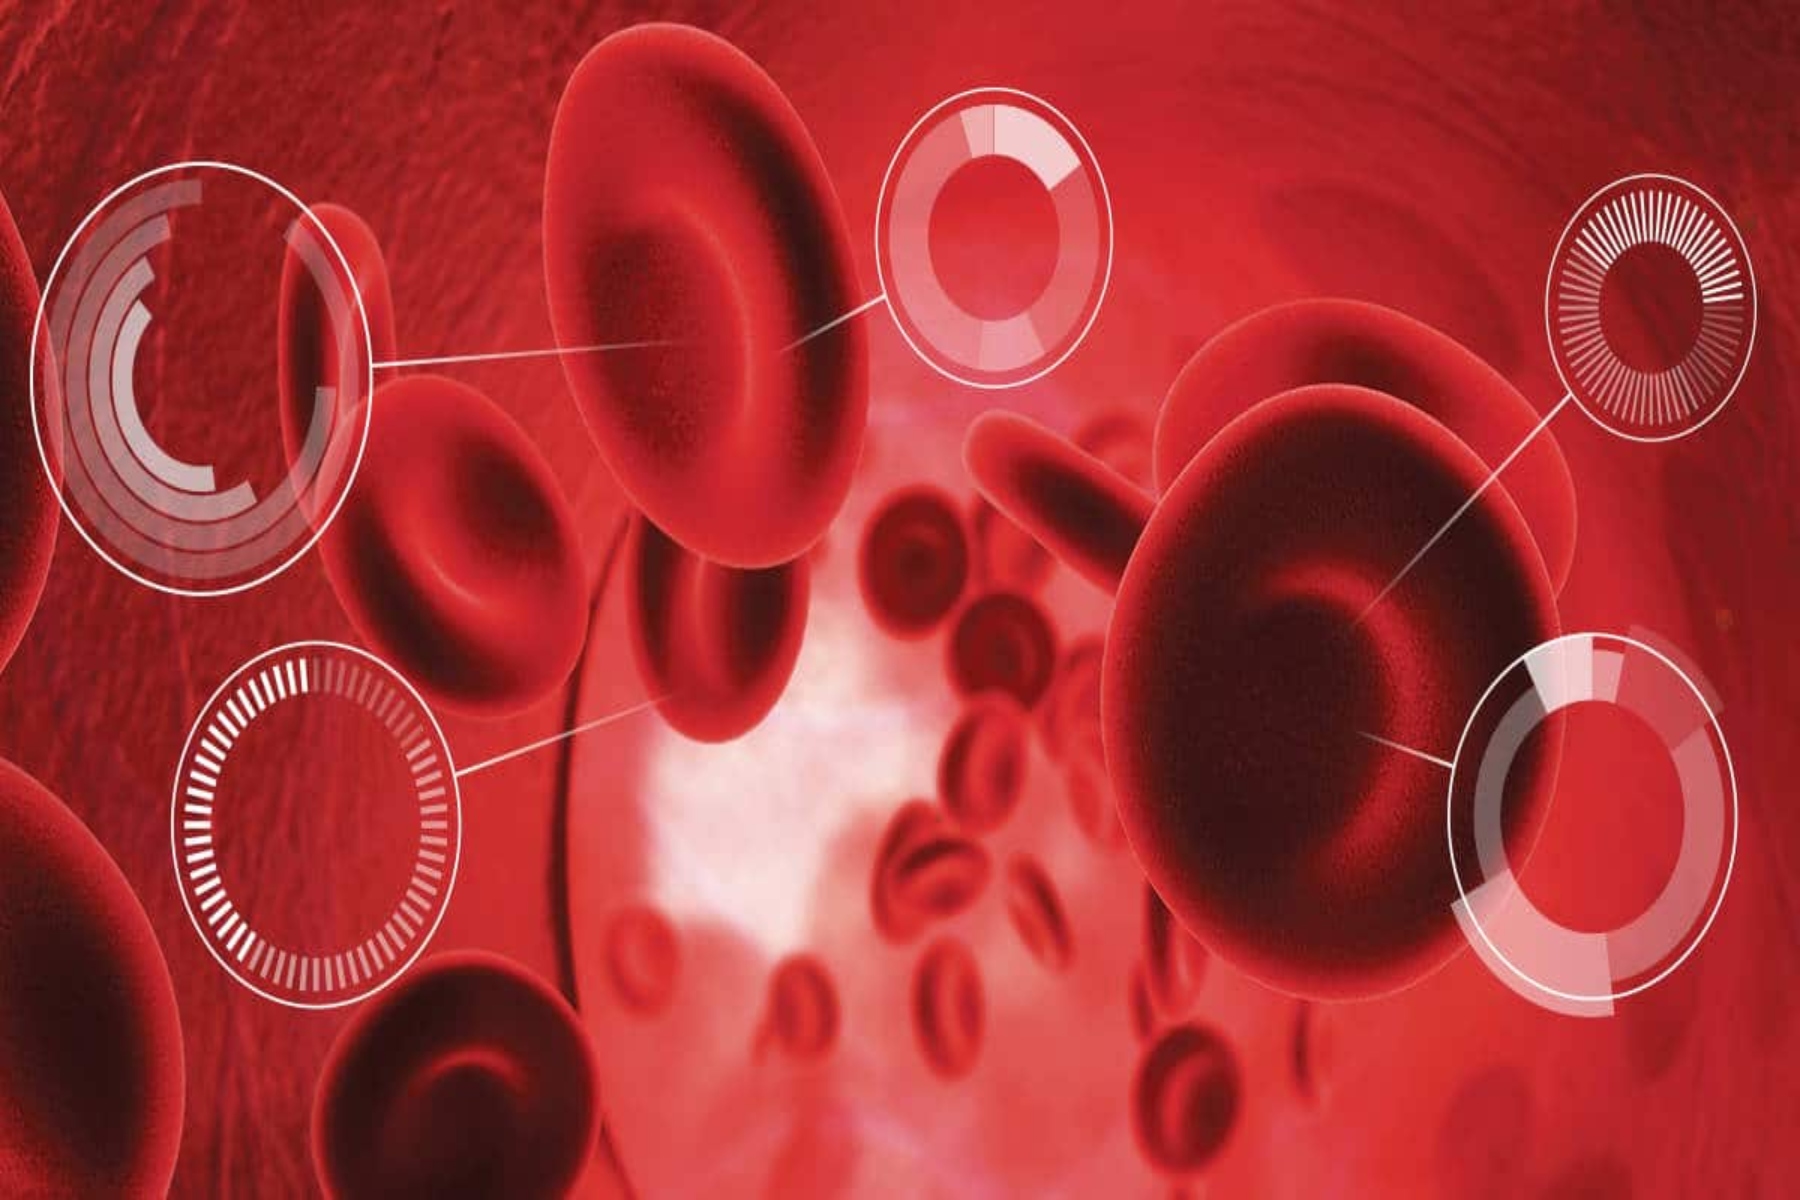 Εξετάσεις αίματος: Ποιες είναι οι σημαντικότερες εξετάσεις αίματος και κάθε πότε πρέπει να τις κάνουμε;